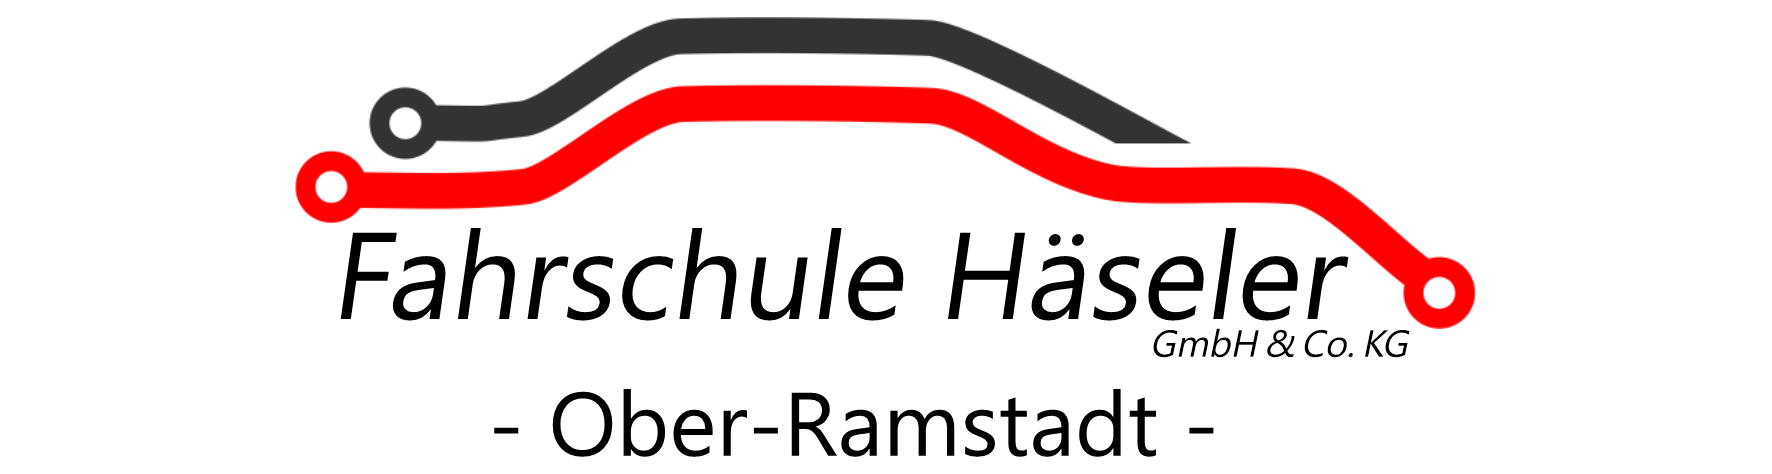 Fahrschule Häseler Logo